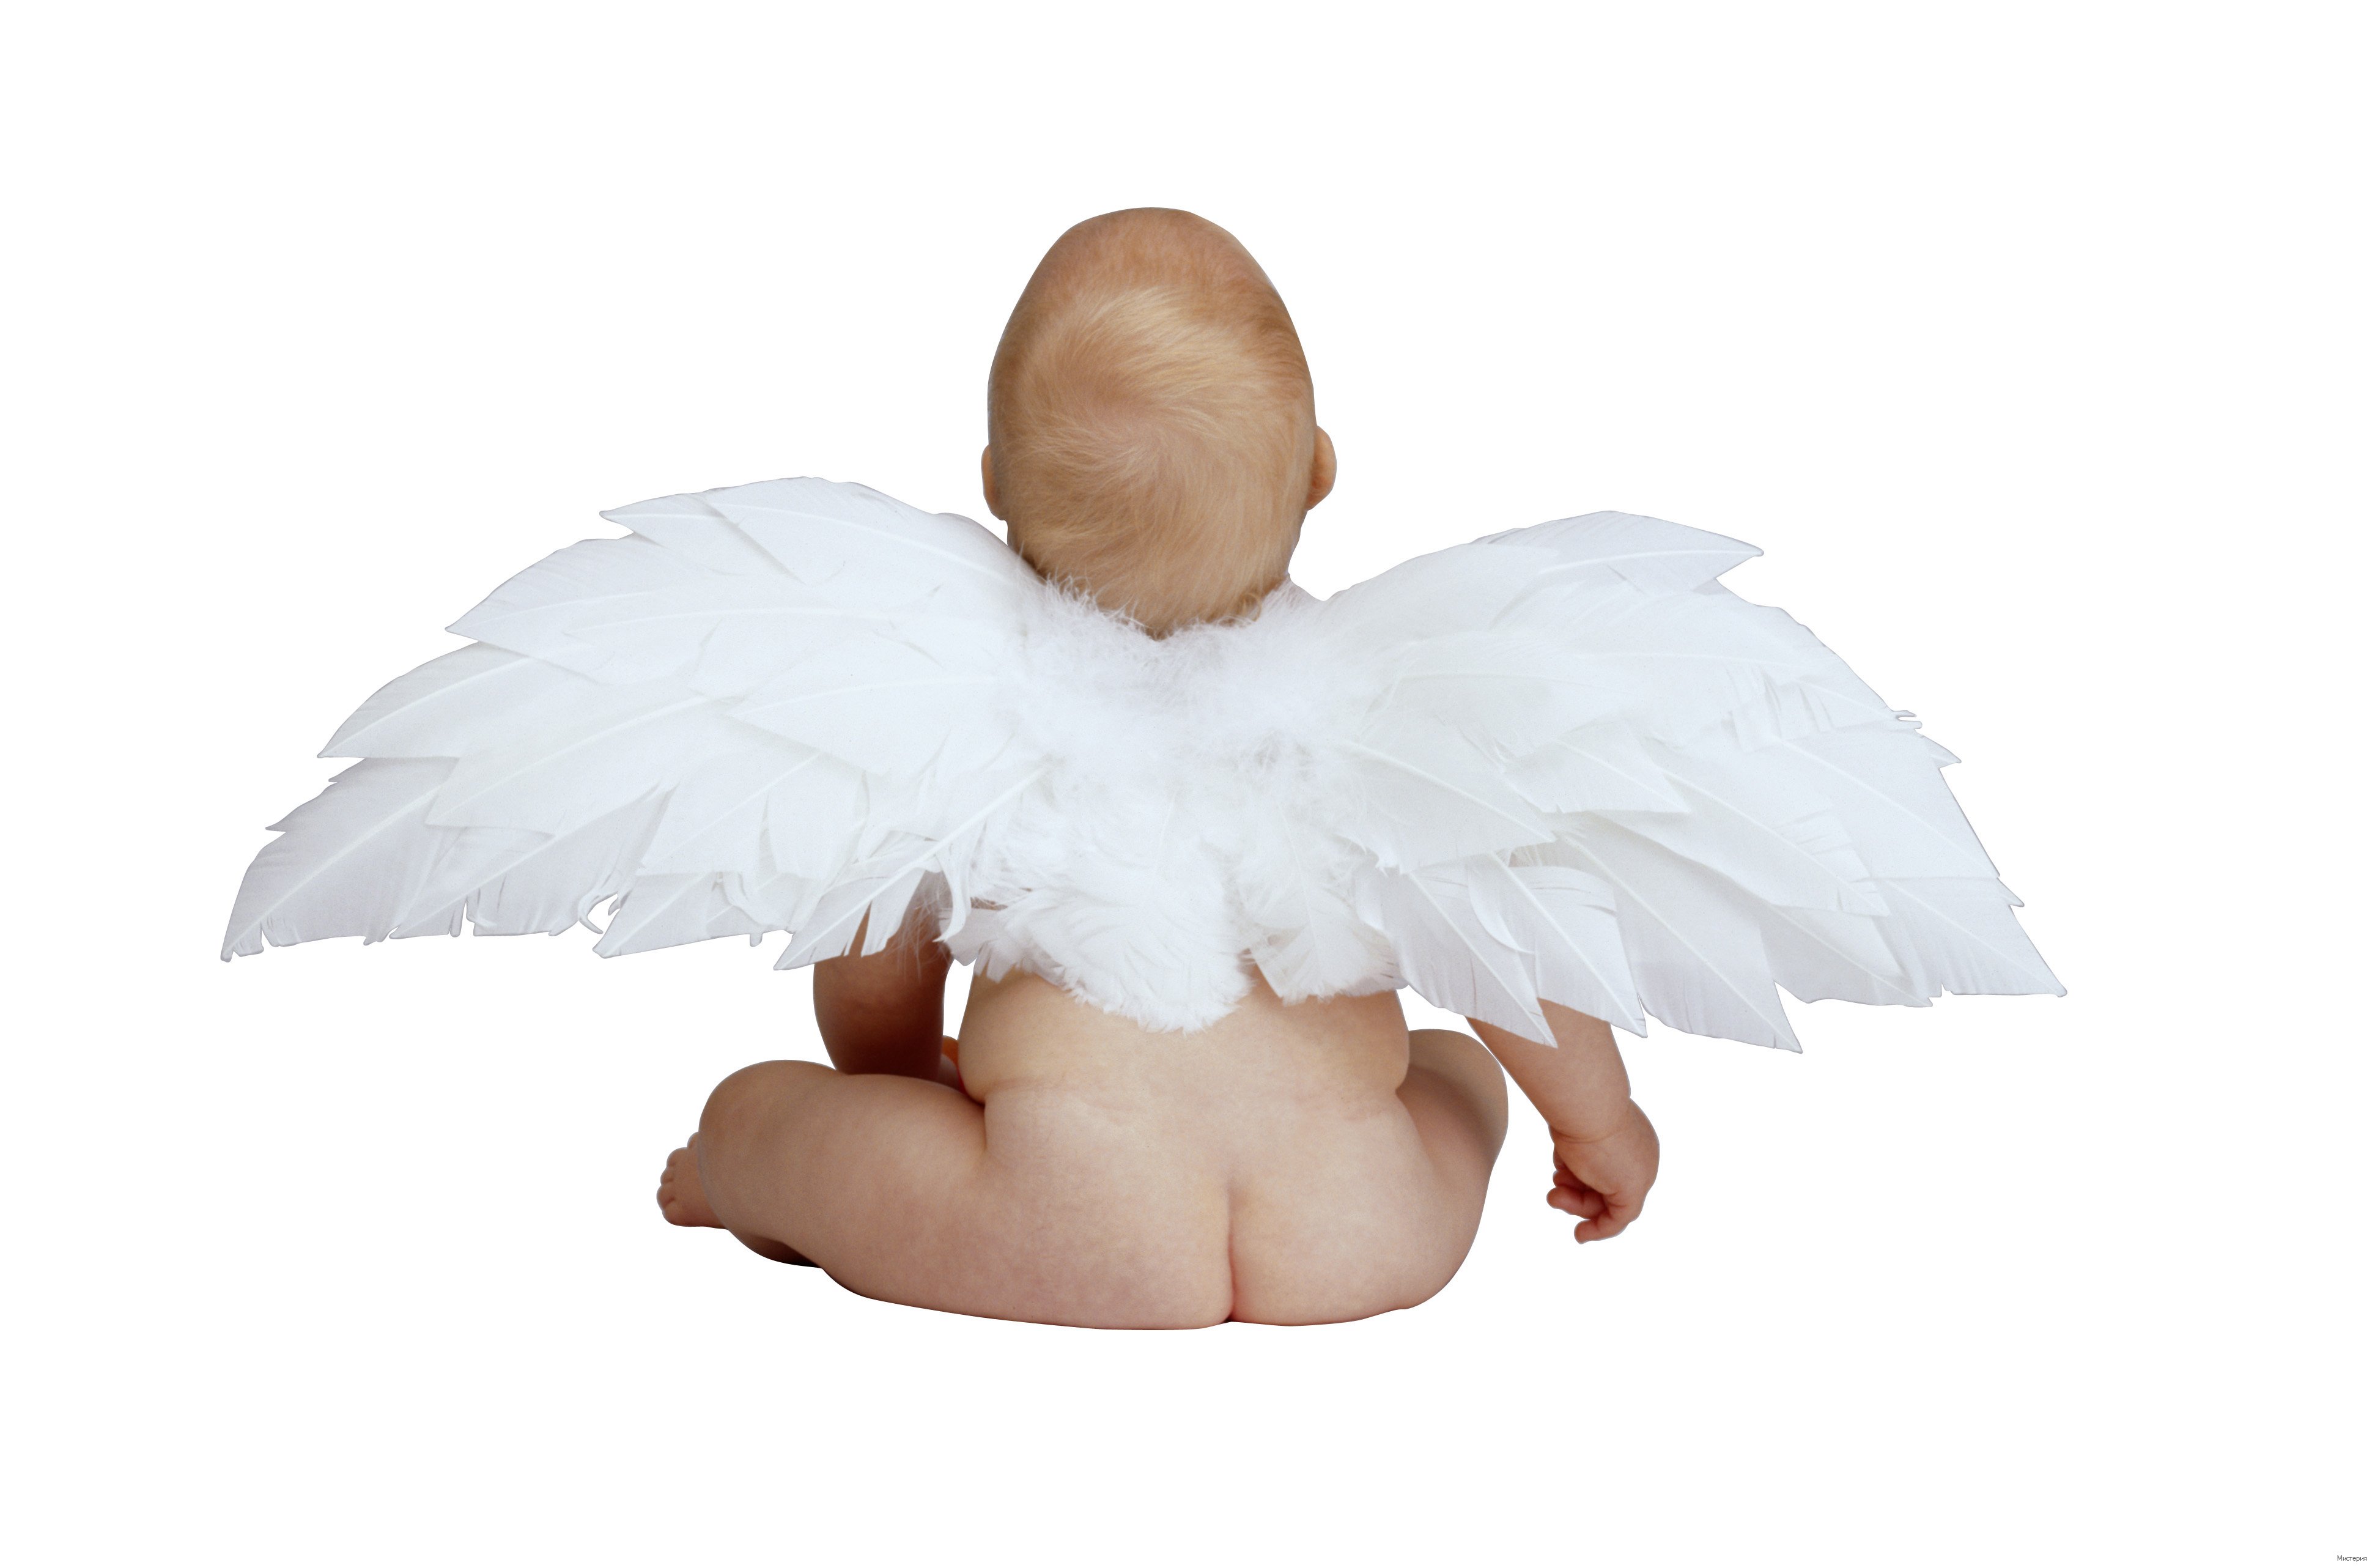 Ребенок с крыльями ангела